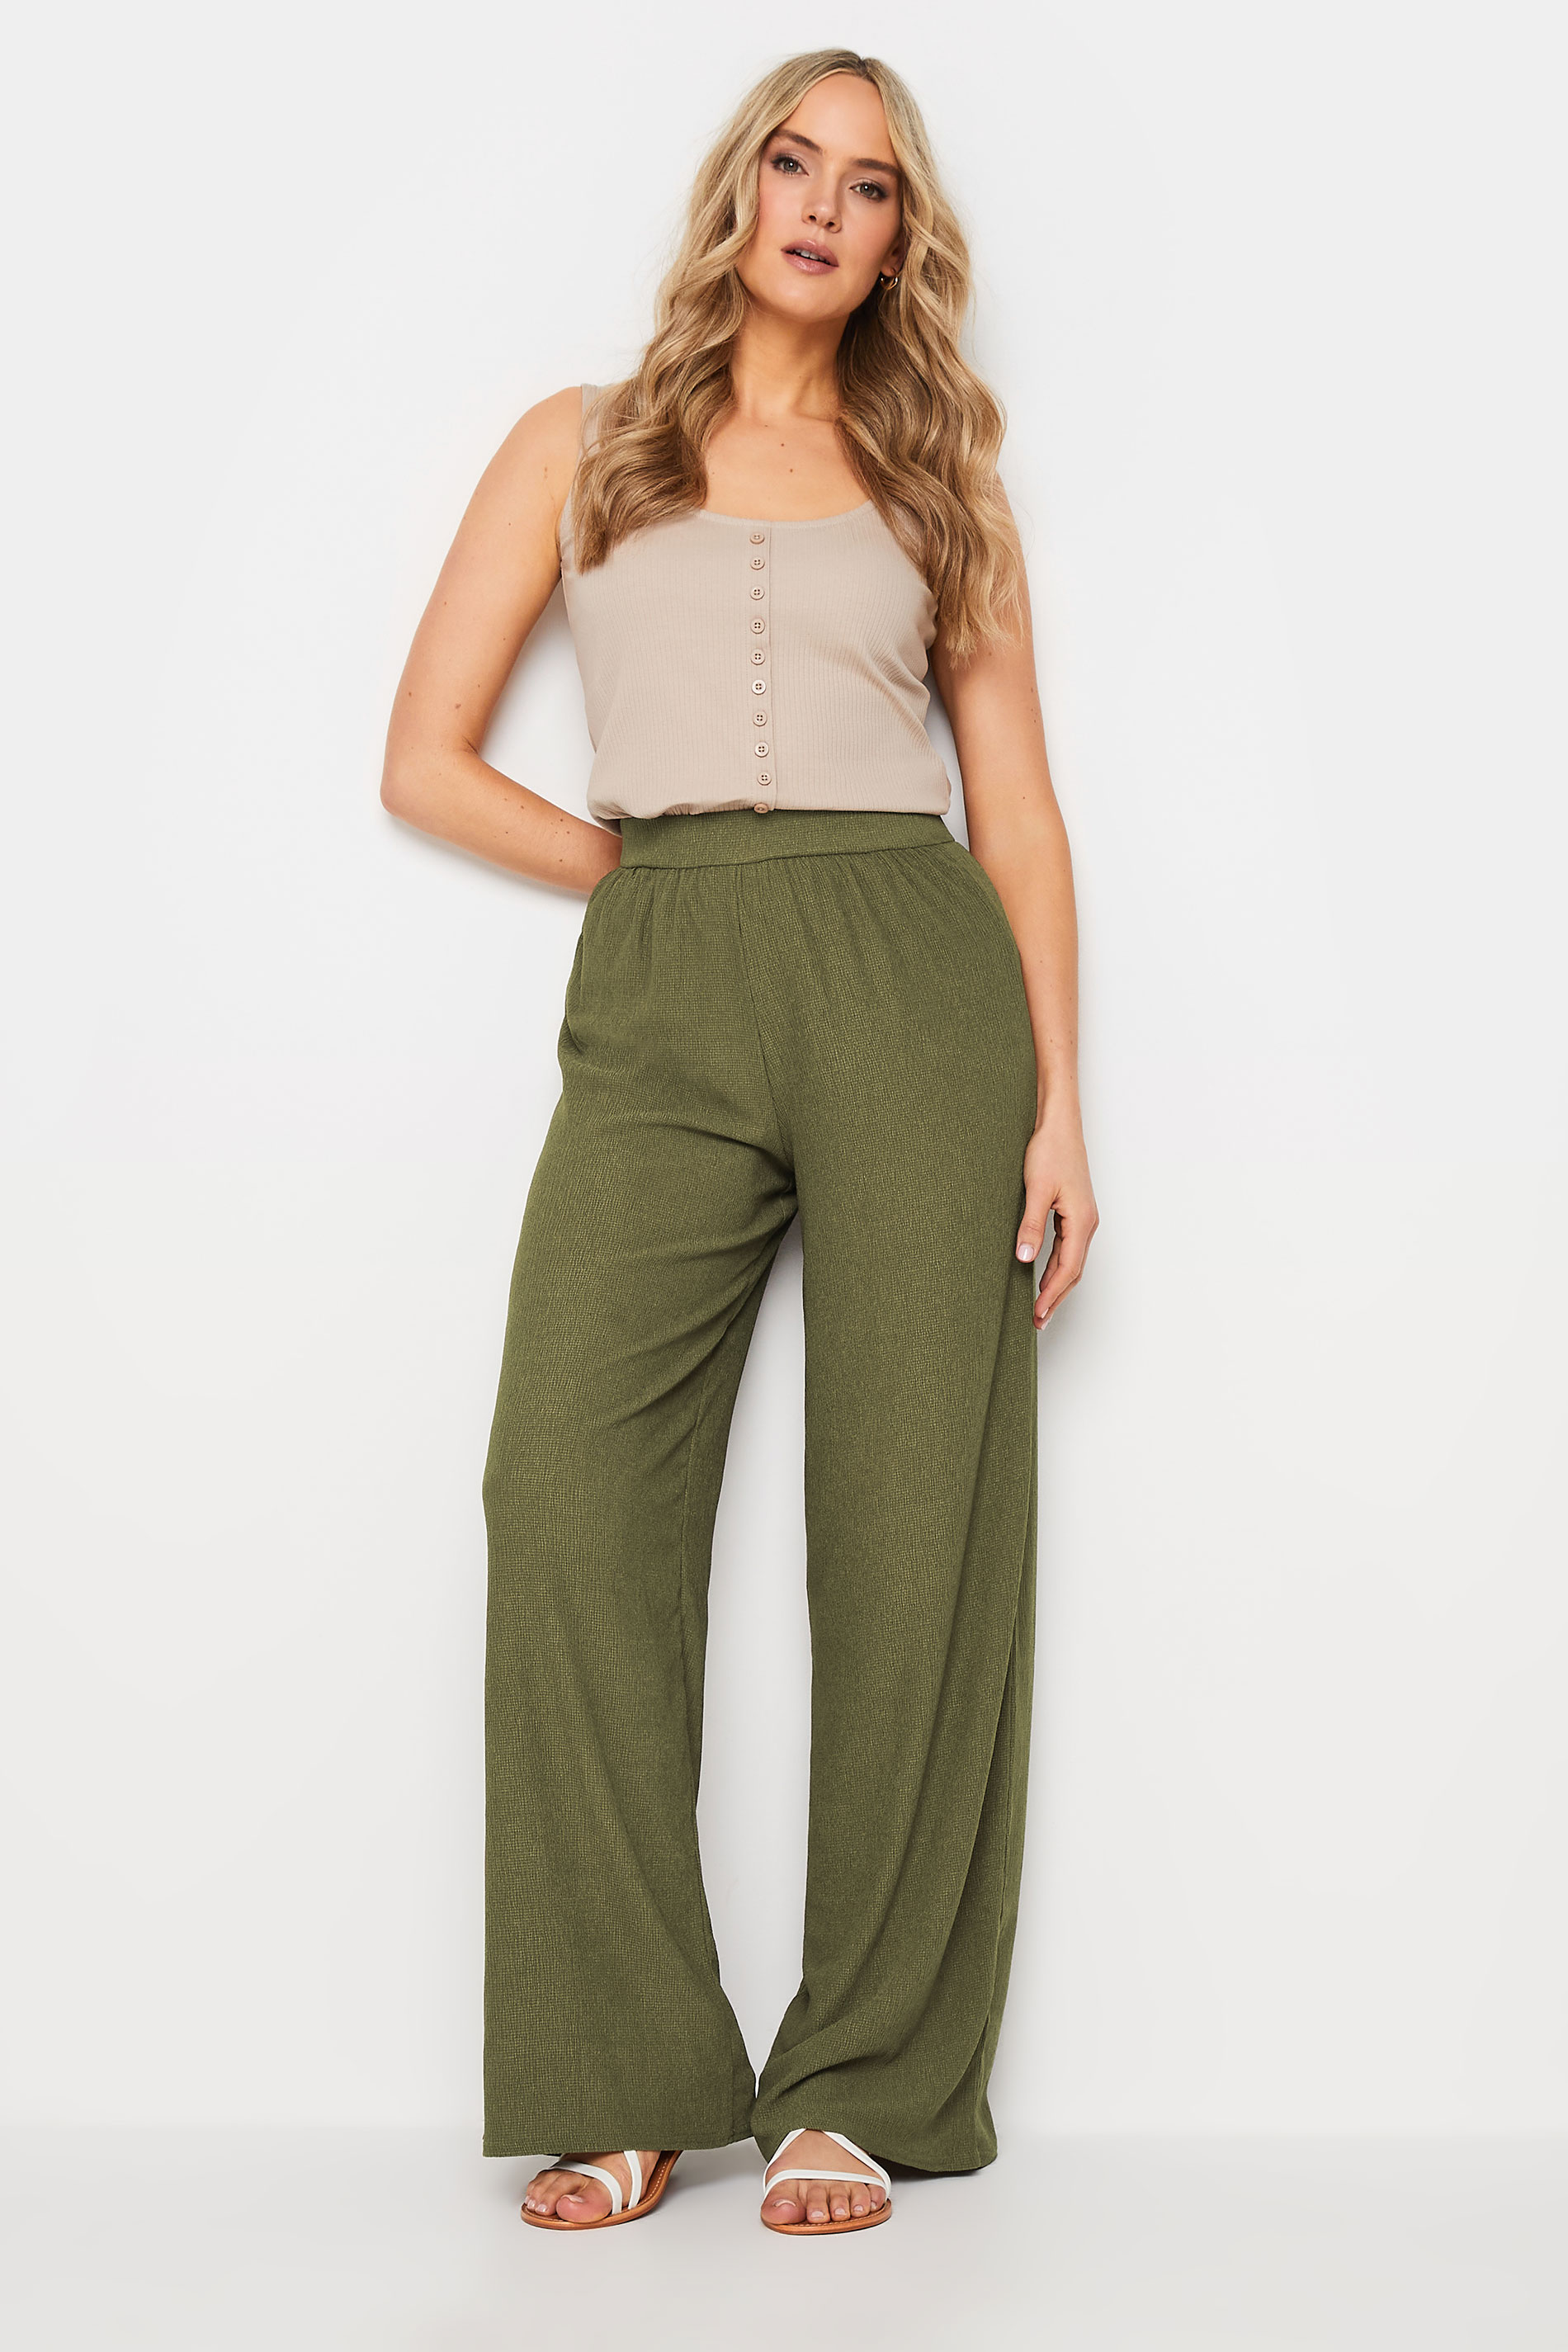 LTS Tall Women's Khaki Green Textured Wide Leg Trousers | Long Tall Sally  3